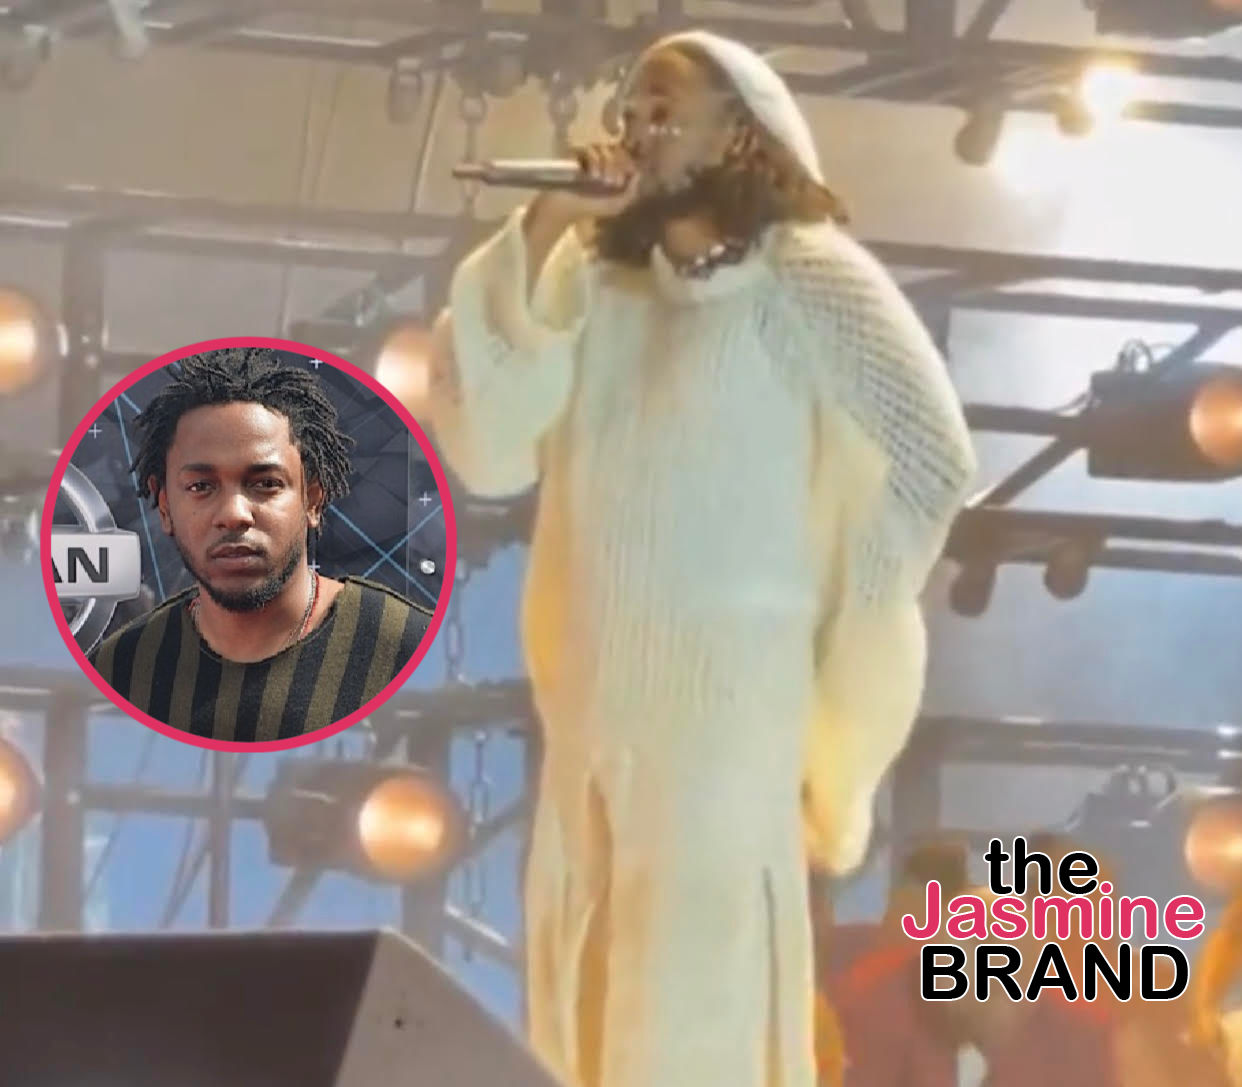 Kendrick Lamar : son concert événement retransmis en direct sur Prime Video